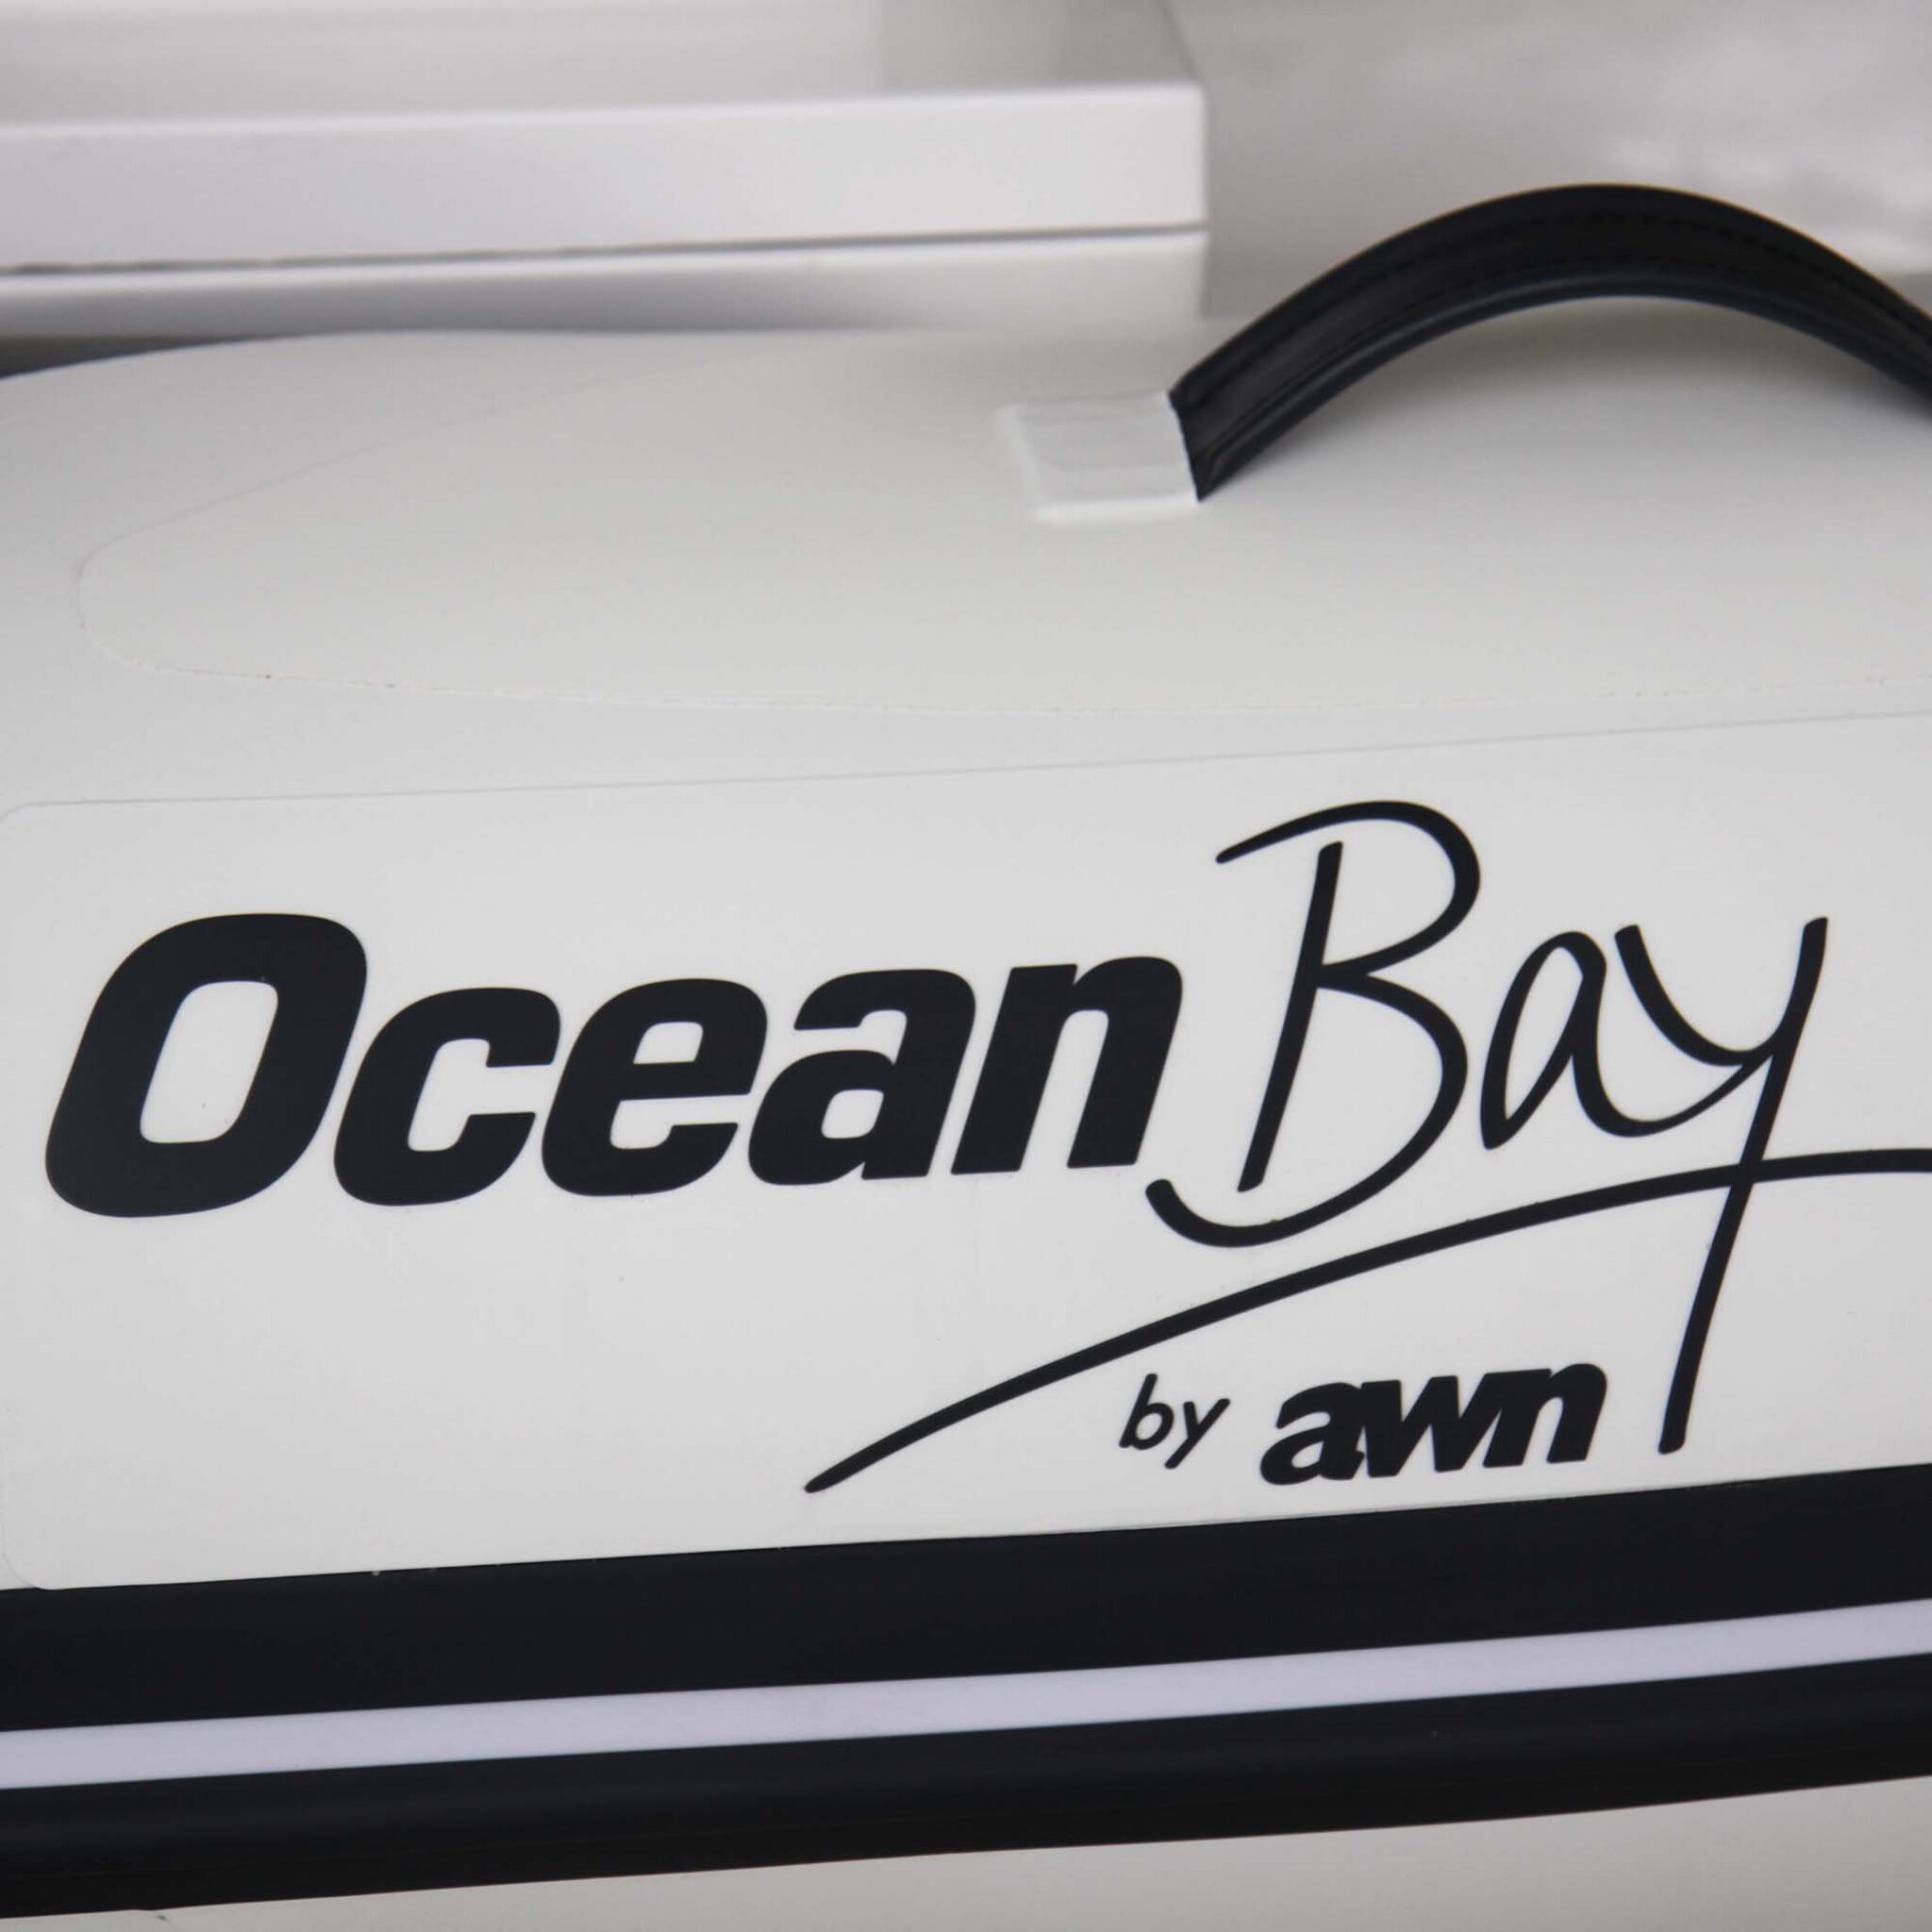 OceanBay by awn Festrumpfschlauchboot RIB mit Steuerstand